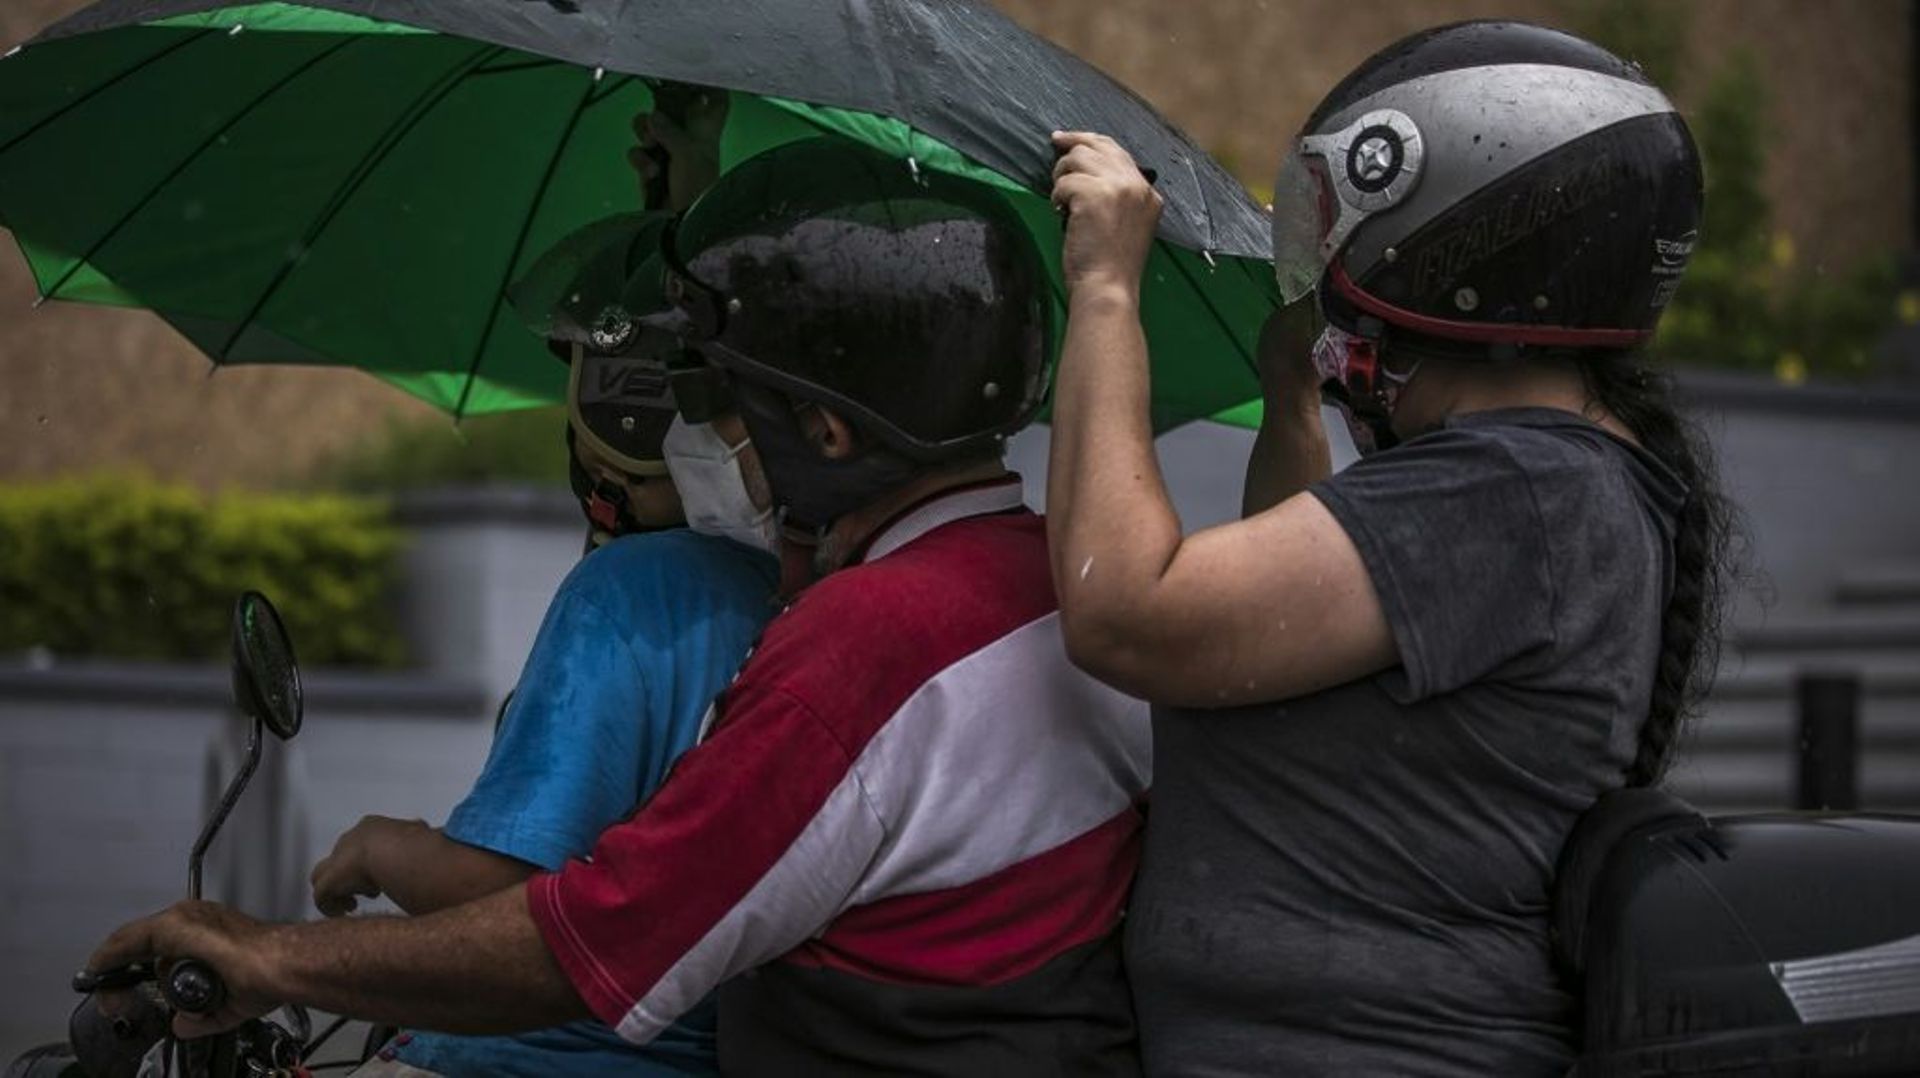 Des personnes à moto sous une pluie battante avant l'arrivée de la tempête Pamela, qui devrait se transformer en ouragan, le 12 octobre 2021 à Culiacan, au Mexique